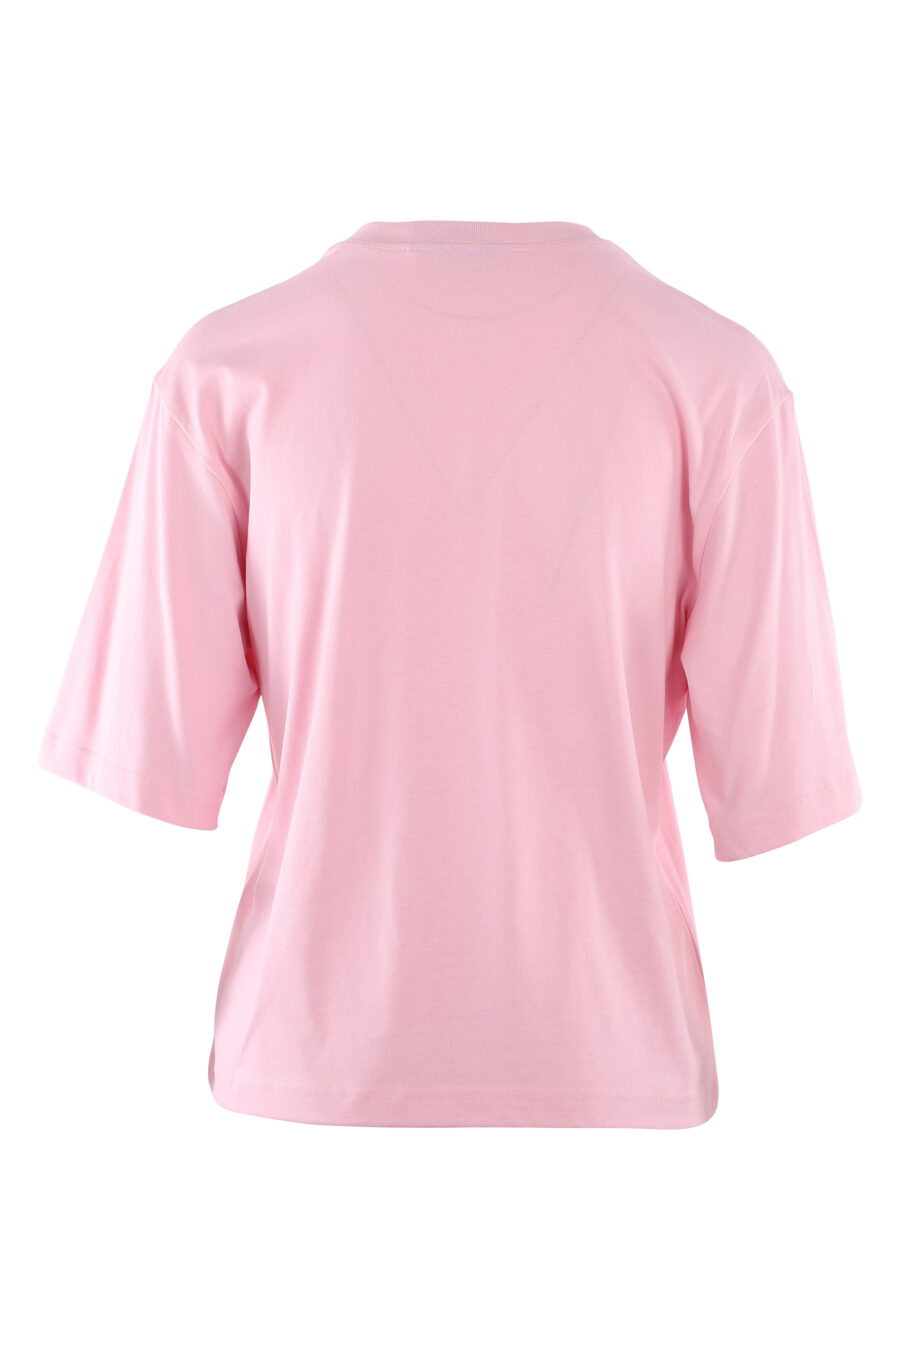 Rosa T-Shirt mit Auge und Stern-Logo - IMG 6125